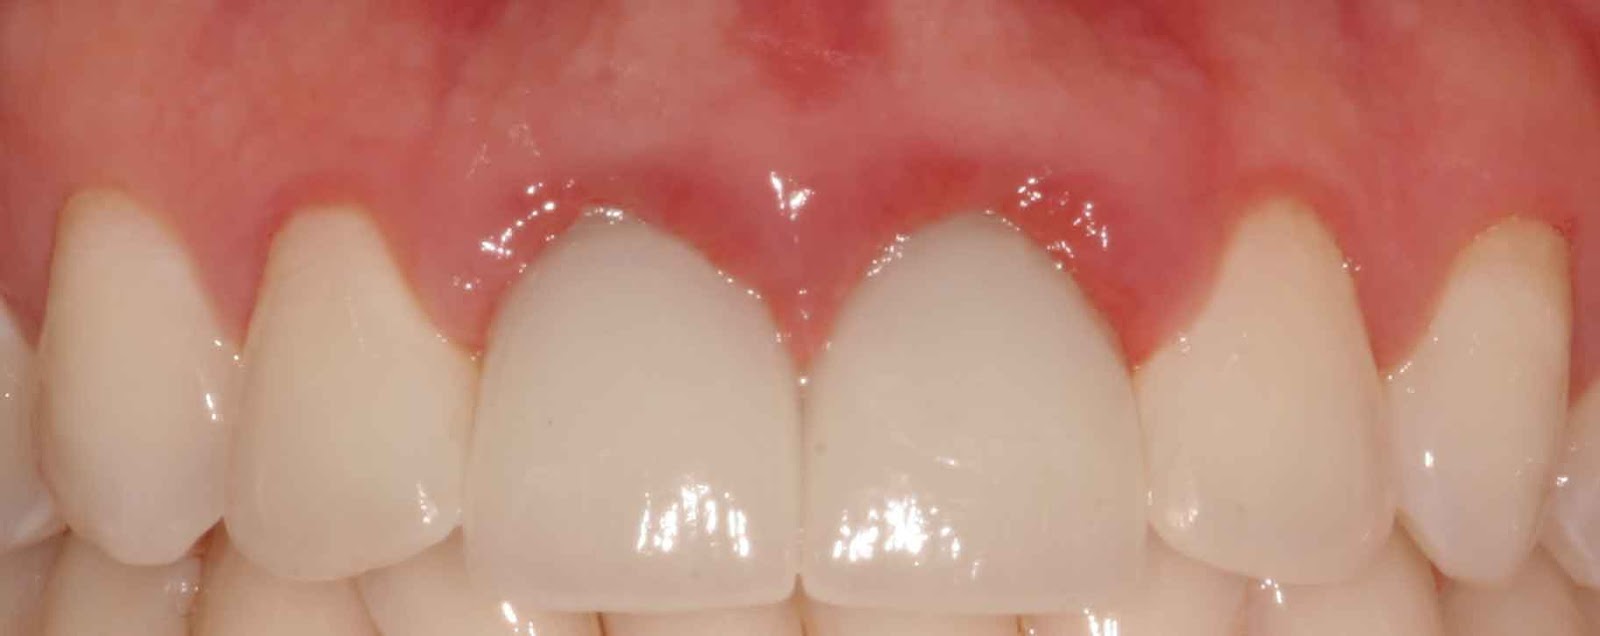 Фото: воспаление десны возле металлокерамических зубов происходит из-за попадания цемента в десневые карманы